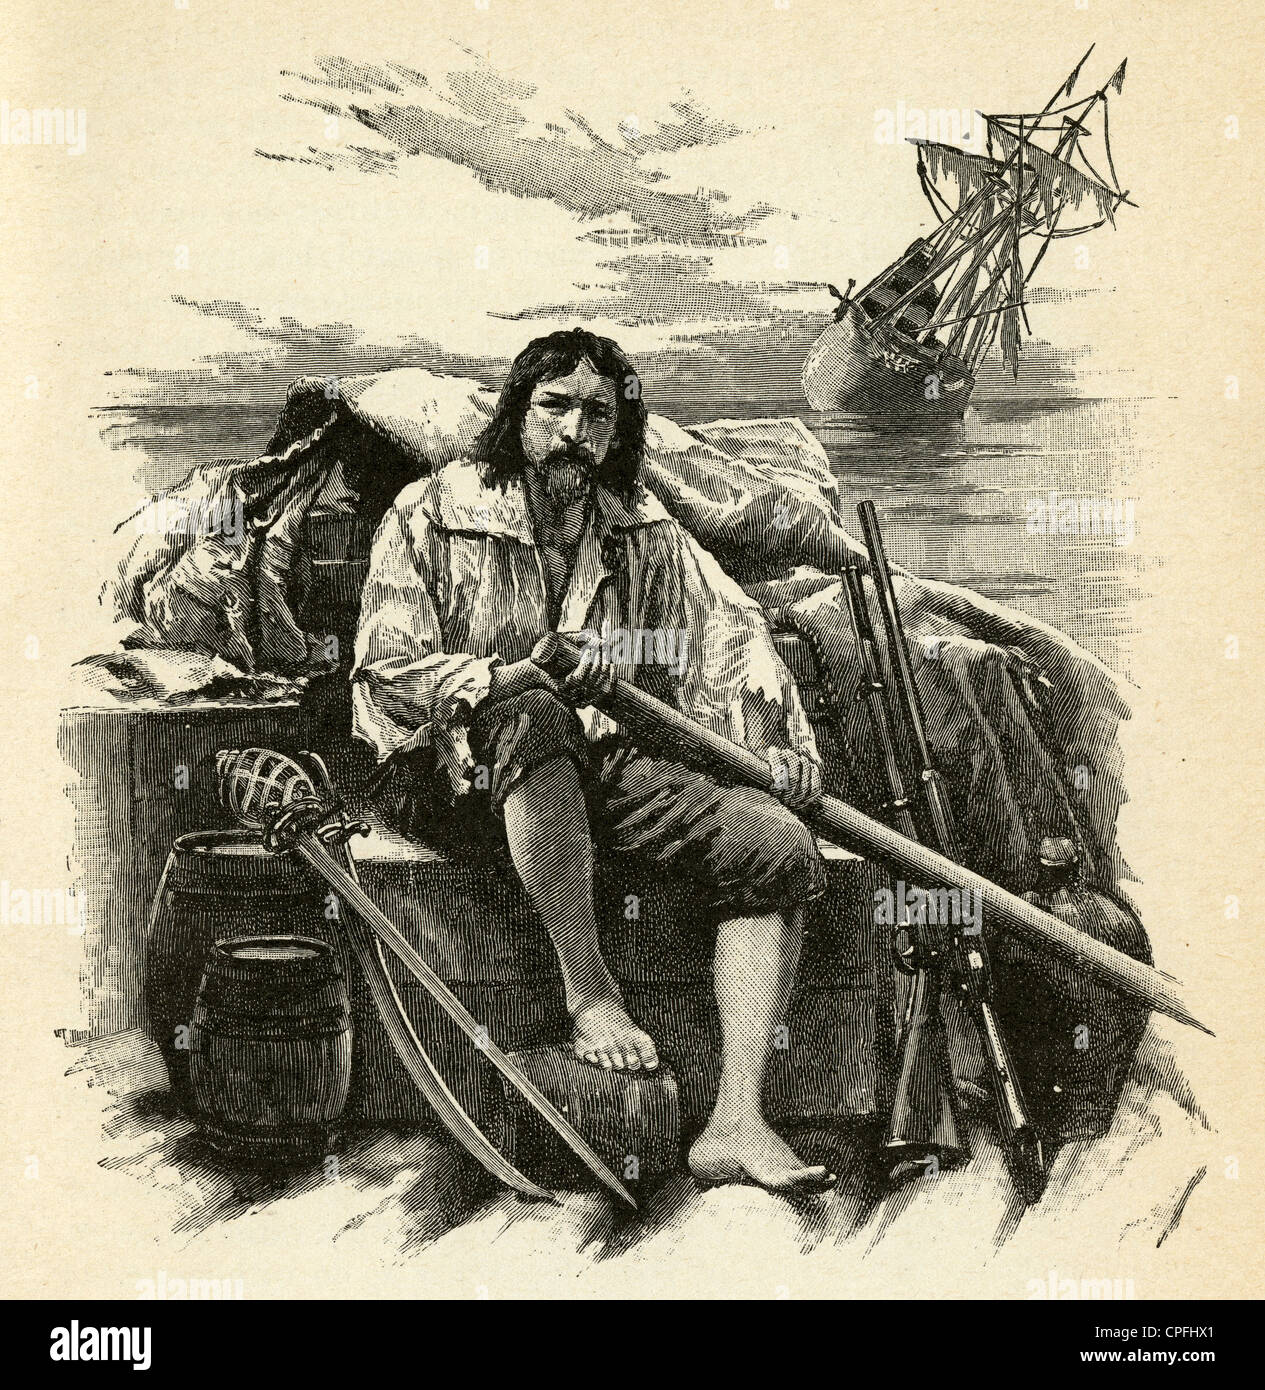 1910s grabado de Robinson Crusoe, de Daniel Defoe: "Con esta carga me hizo a la mar.' ilustrada por Walter Paget. Foto de stock